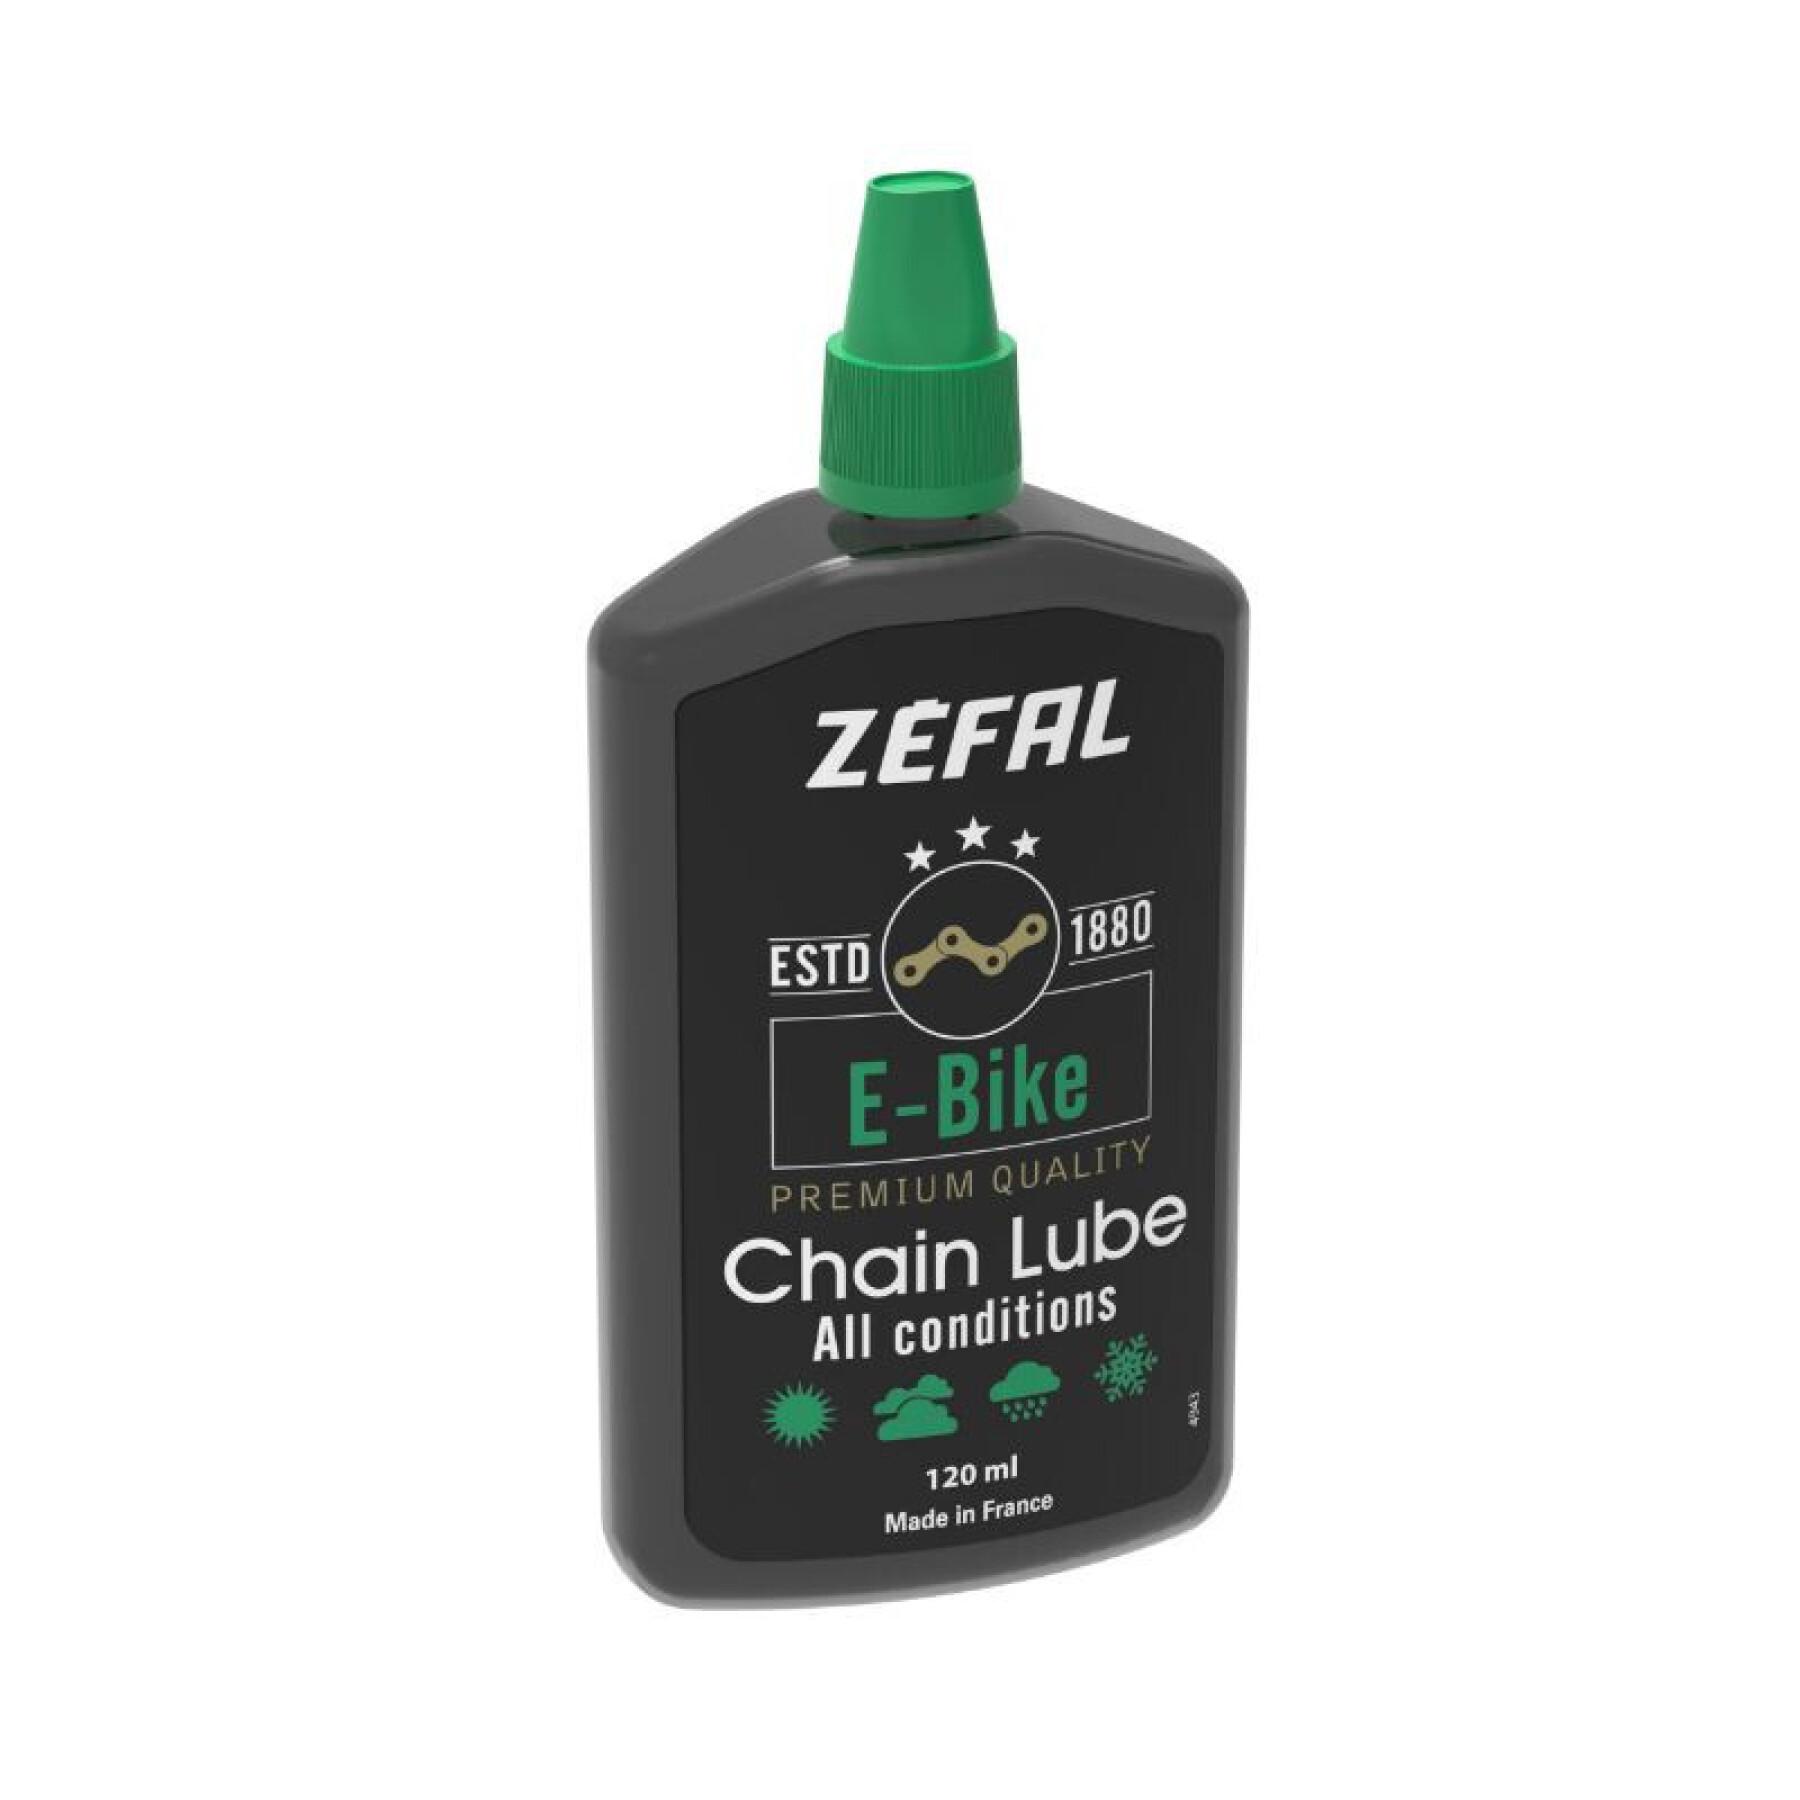 Kedje- och växelsmörjmedel för alla förhållanden Zefal ebike chain lube